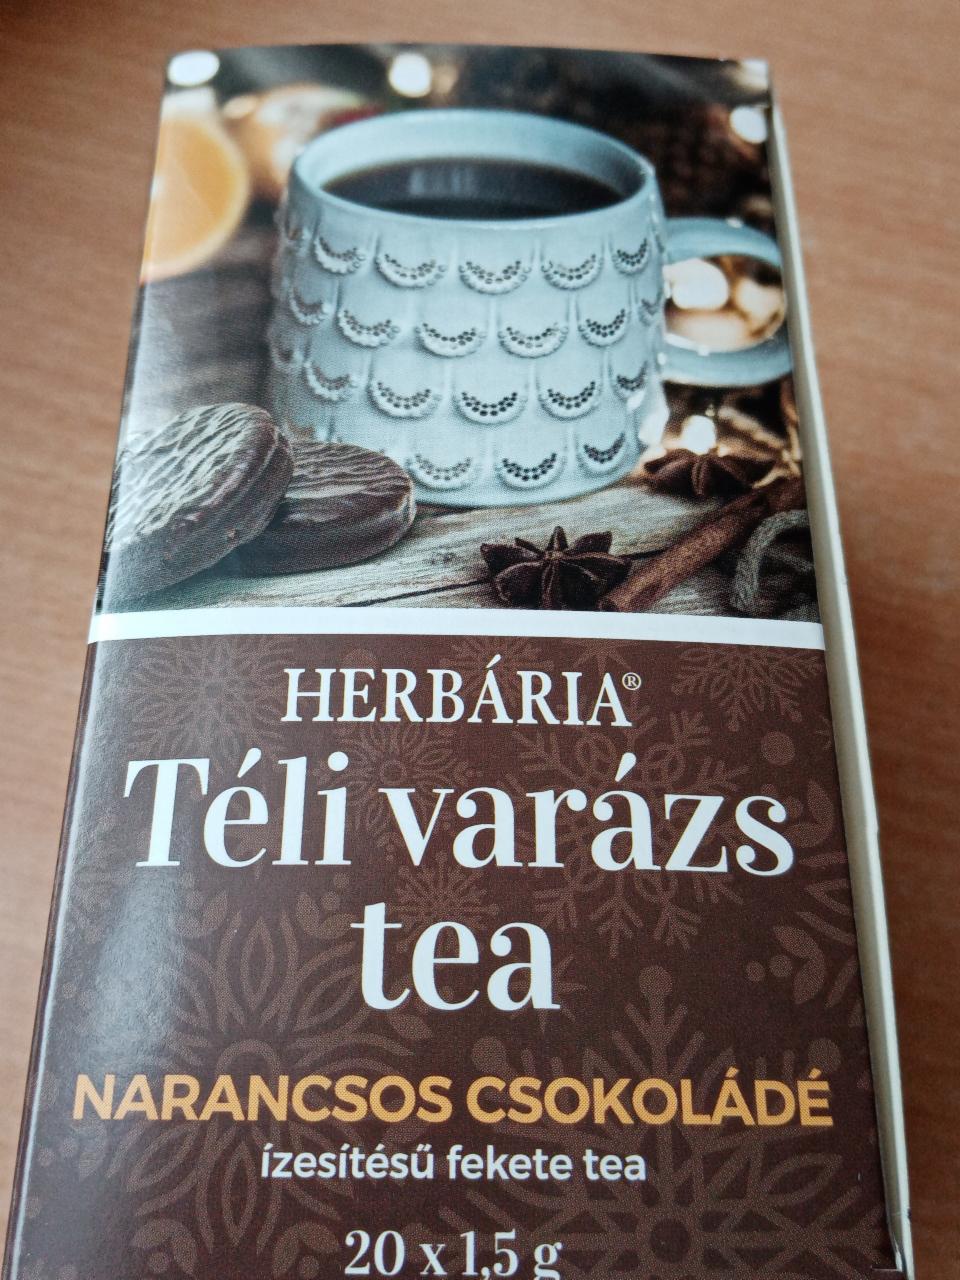 Képek - Téli varázs tea Narancsos csokoládé Herbária